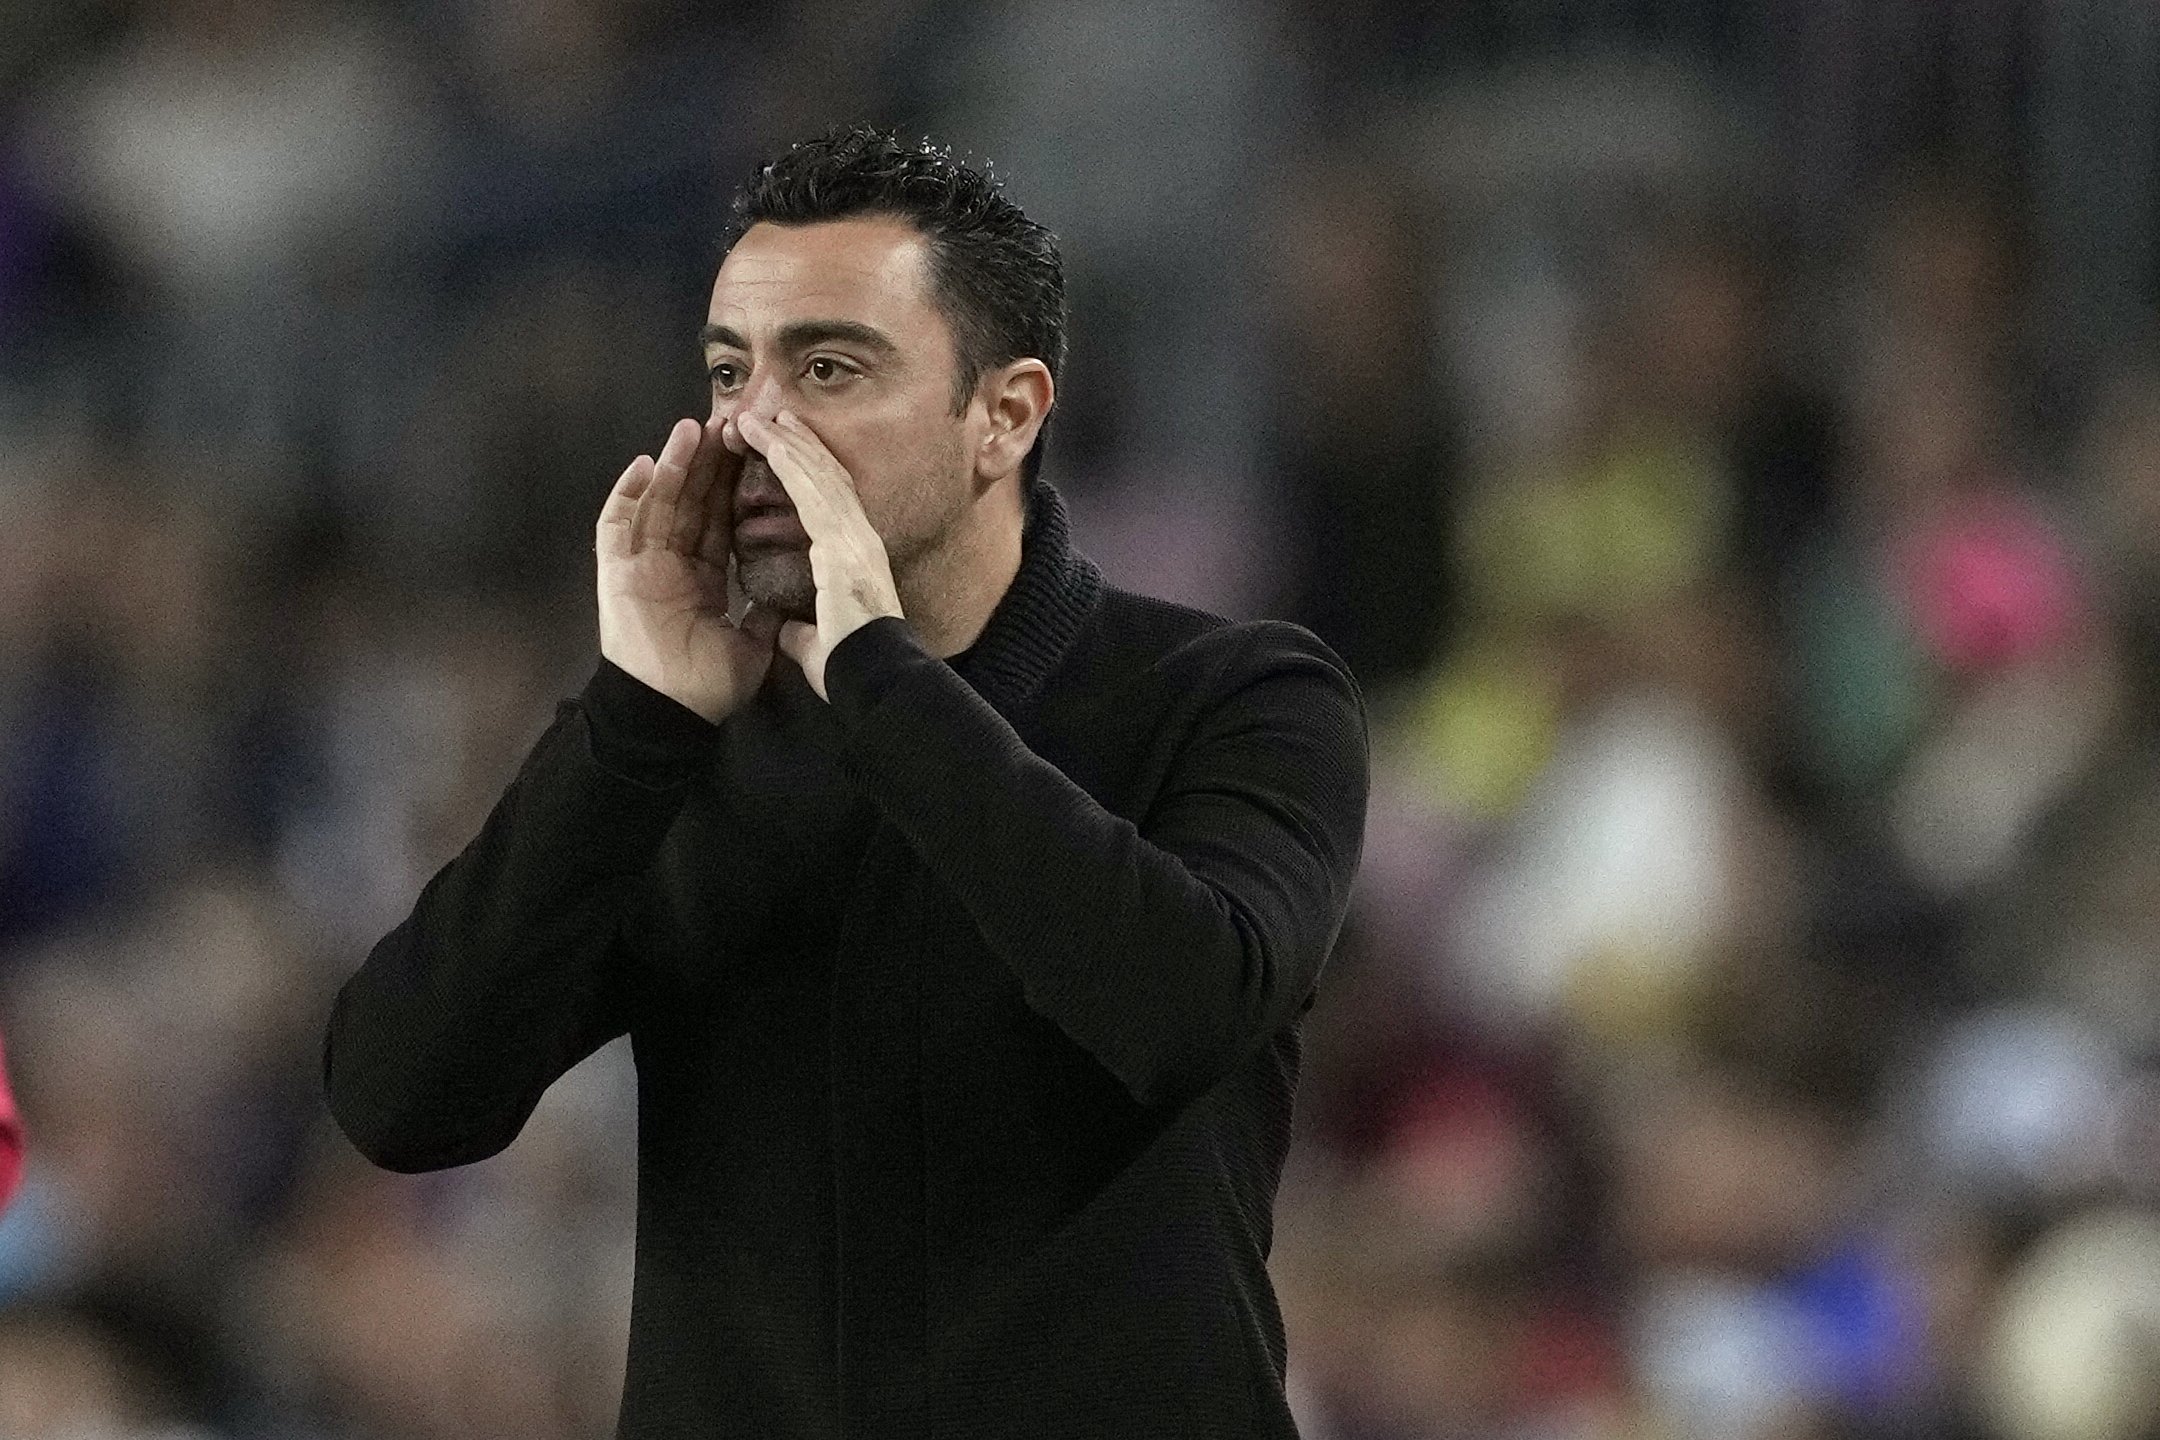 Le ha pedido a Xavi Hernández volver al Barça y está dispuesto a bajarse el sueldo lo que haga falta